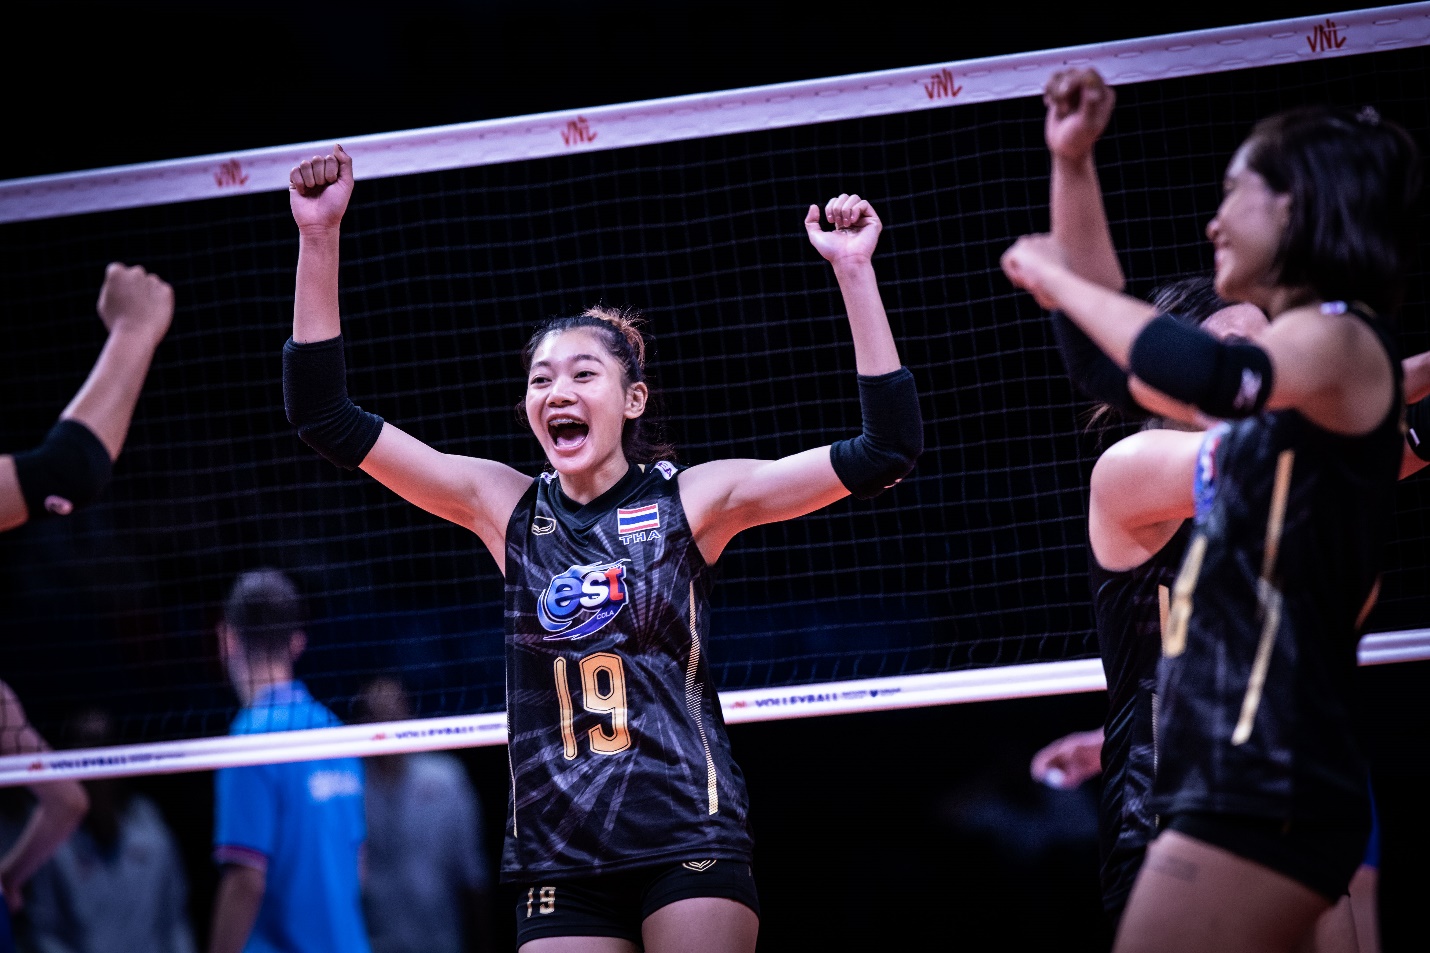 ชัชชุอร โมกศรี นักกีฬาวอลเลย์บอลหญิงทีมชาติไทย